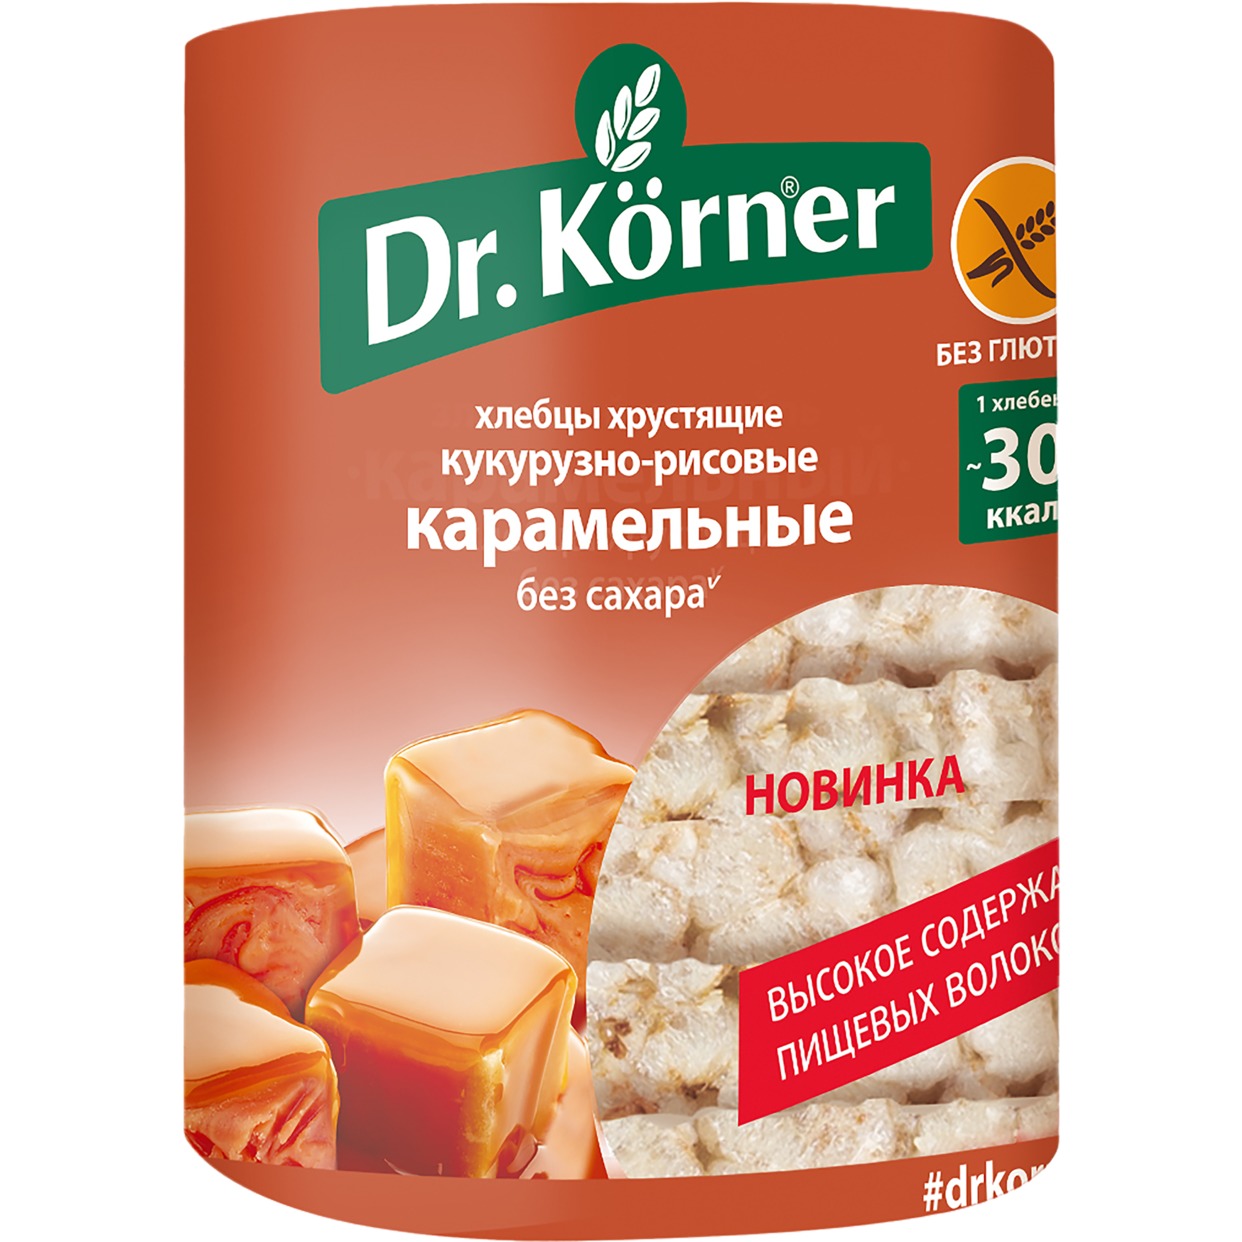 Акция в Пятерочке на Хлебцы Карамельные Dr.Korner, кукурузно-рисовые, 90 г